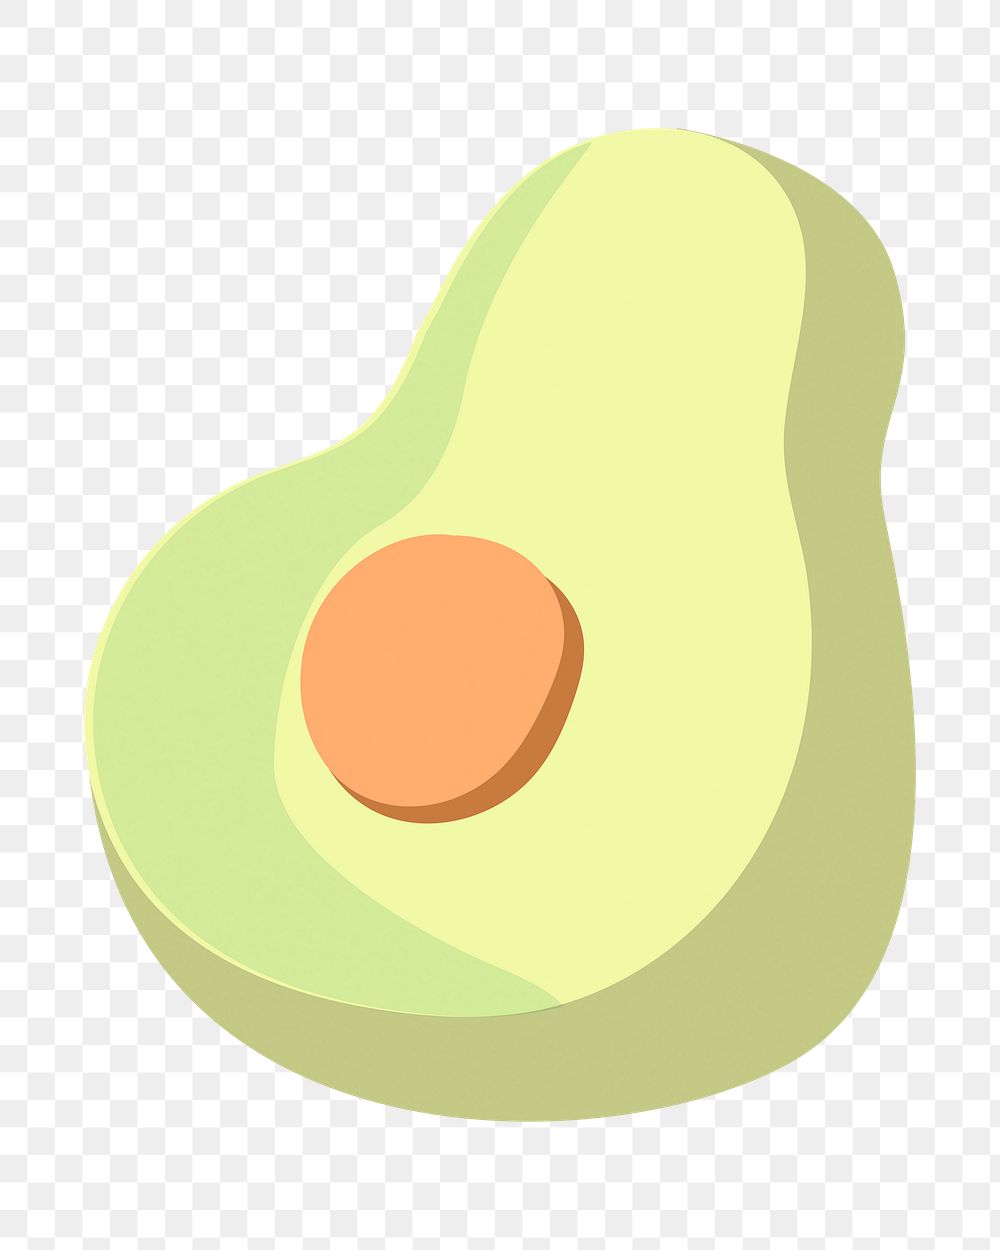 Avocado png illustration, transparent background